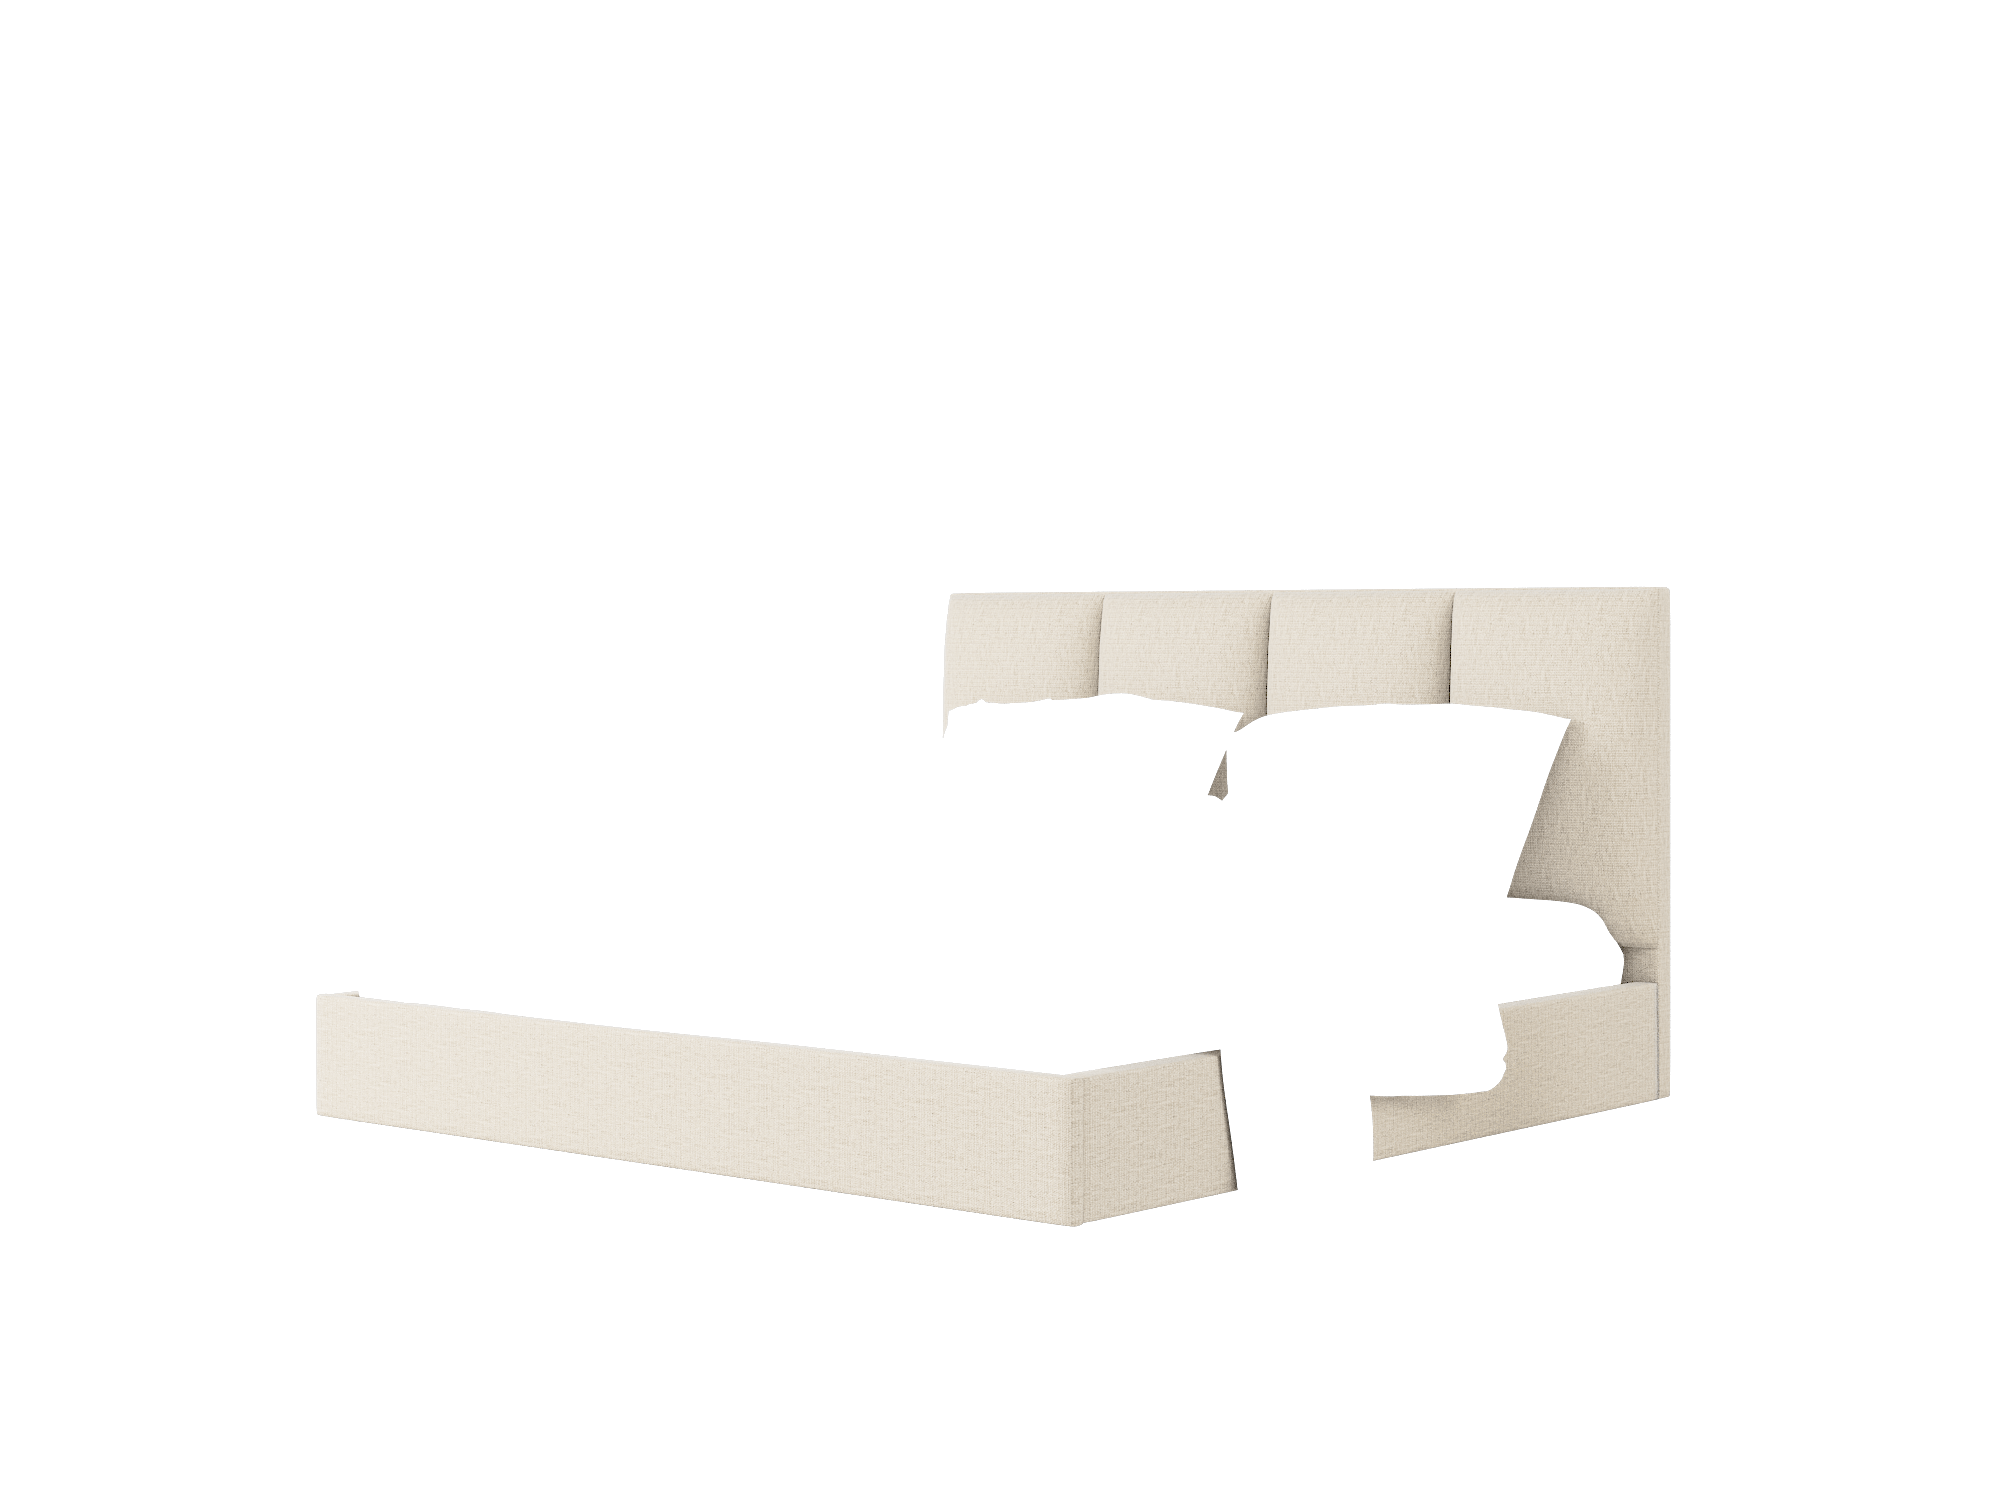 Celine Urban_d Steel Bed King Room Texture